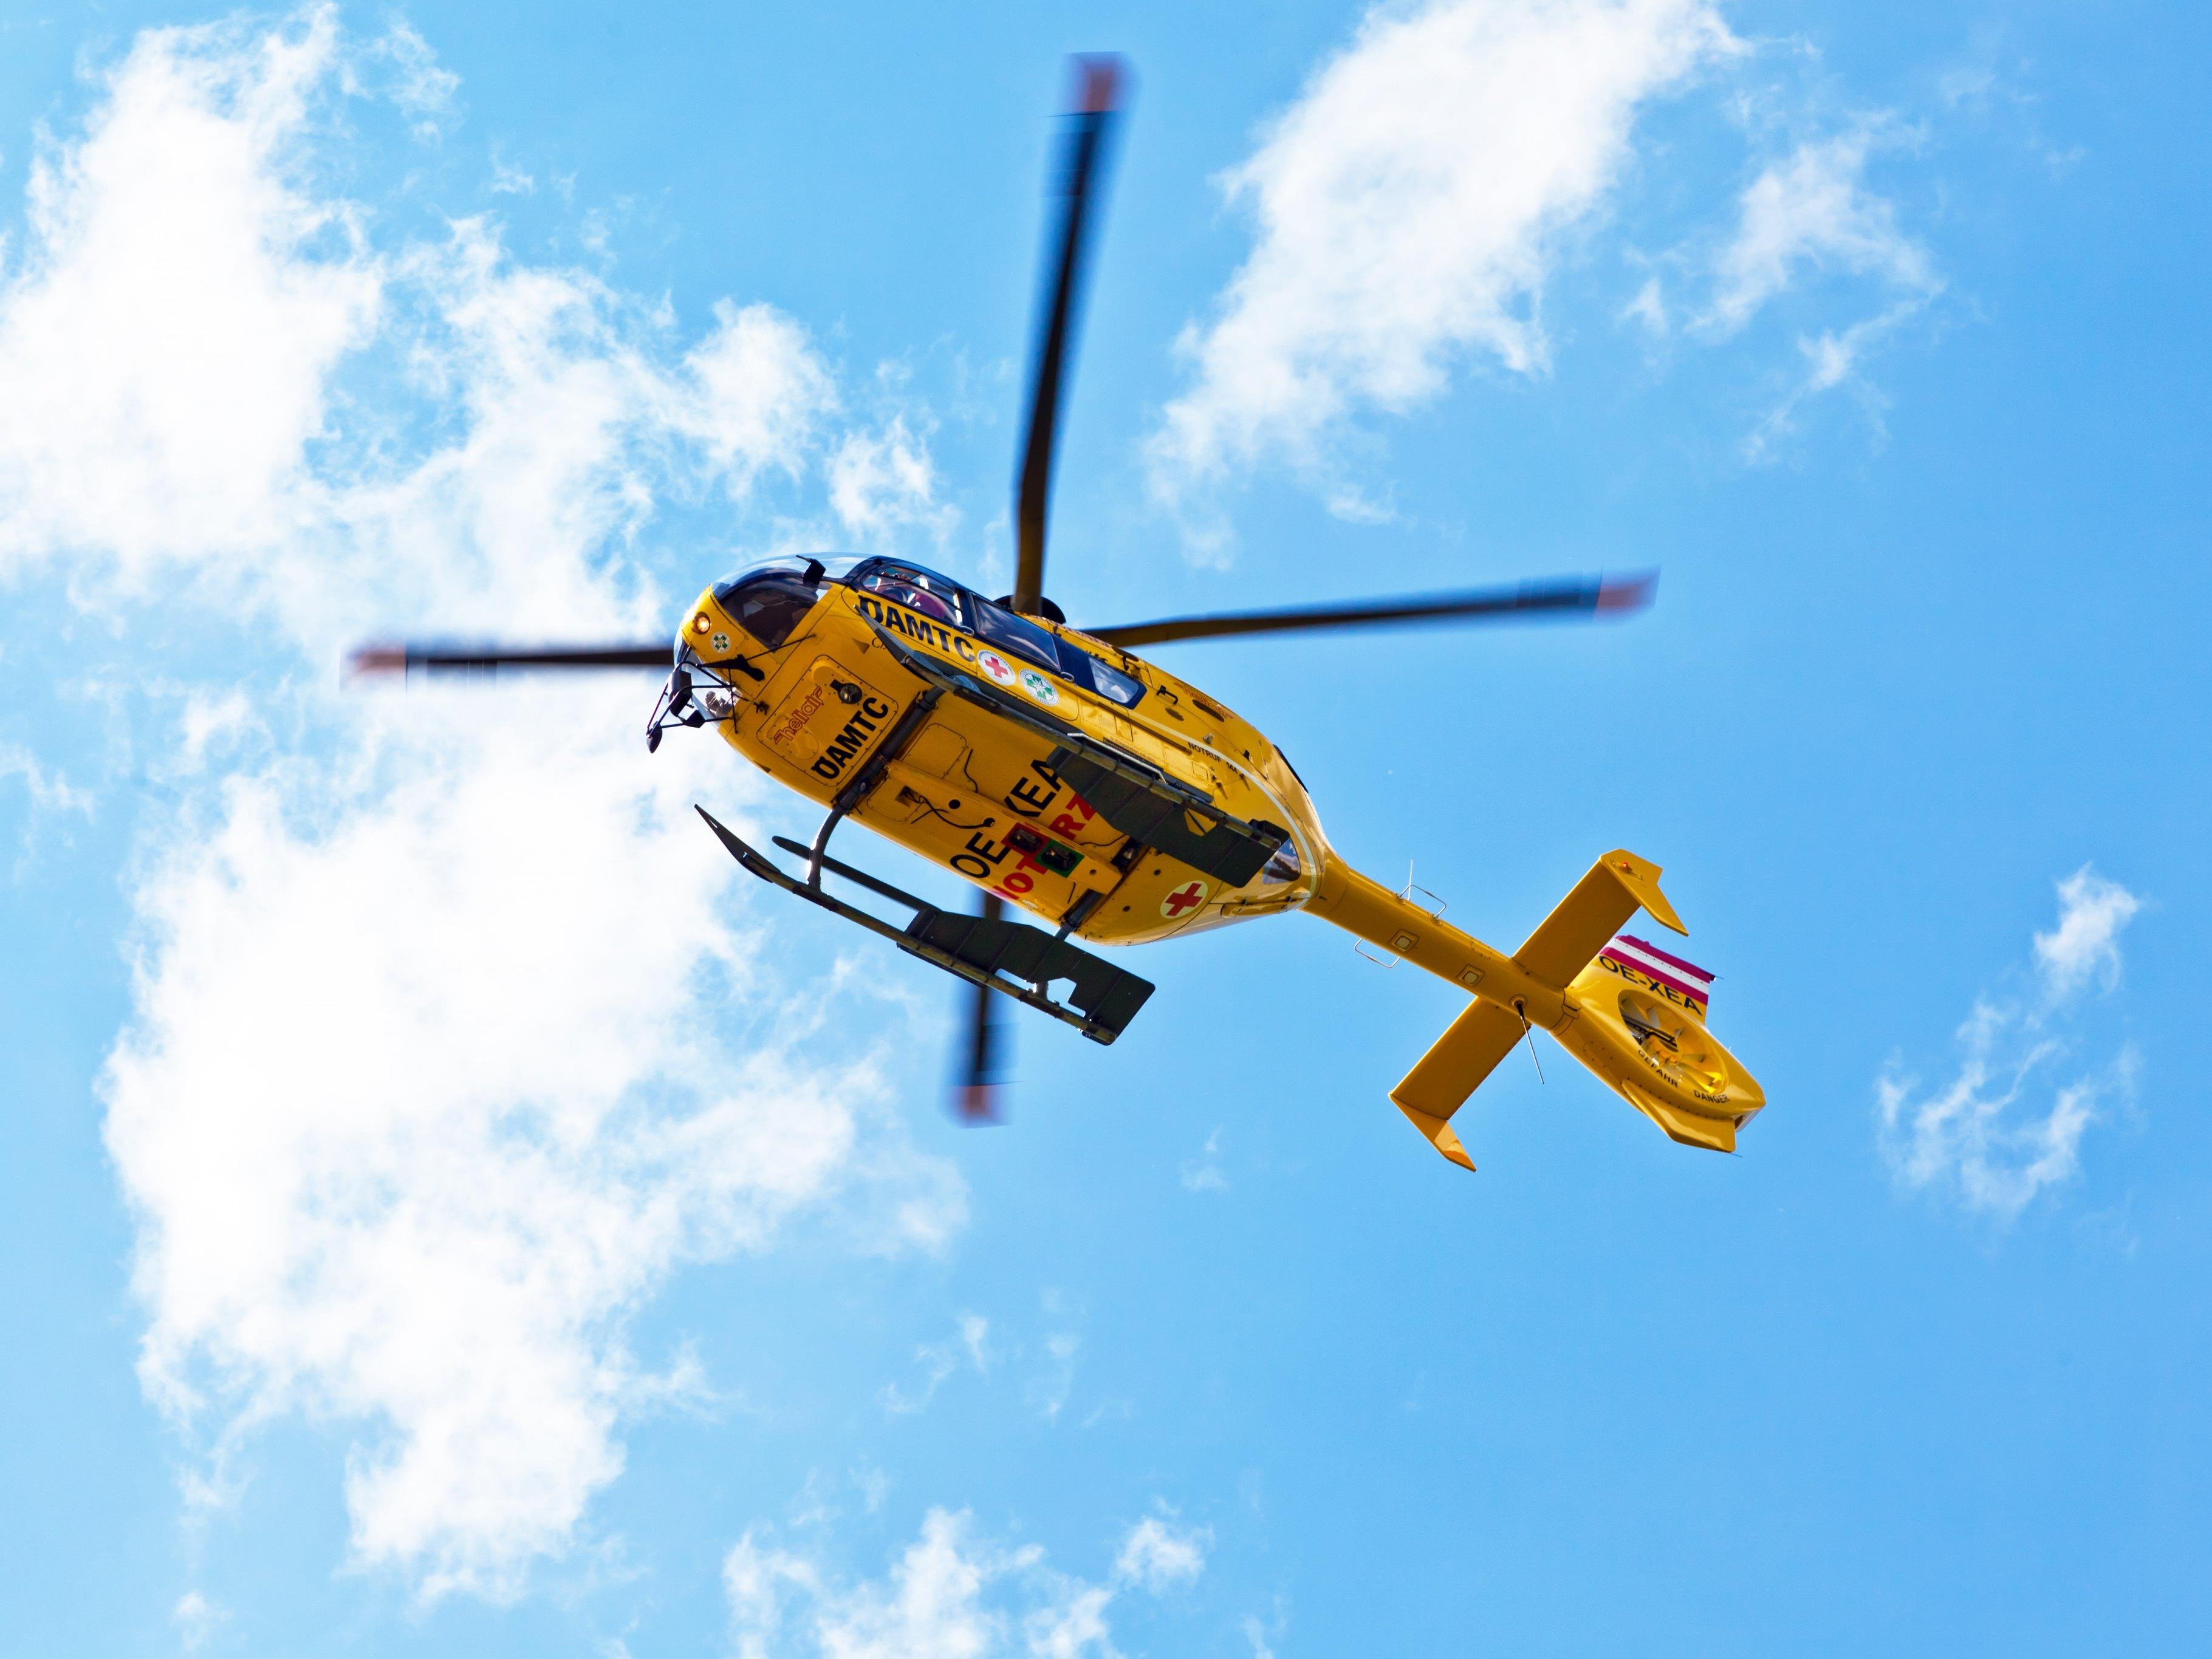 Per Hubschrauber wurde der Verletzte ins LKH Bregenz gebracht.